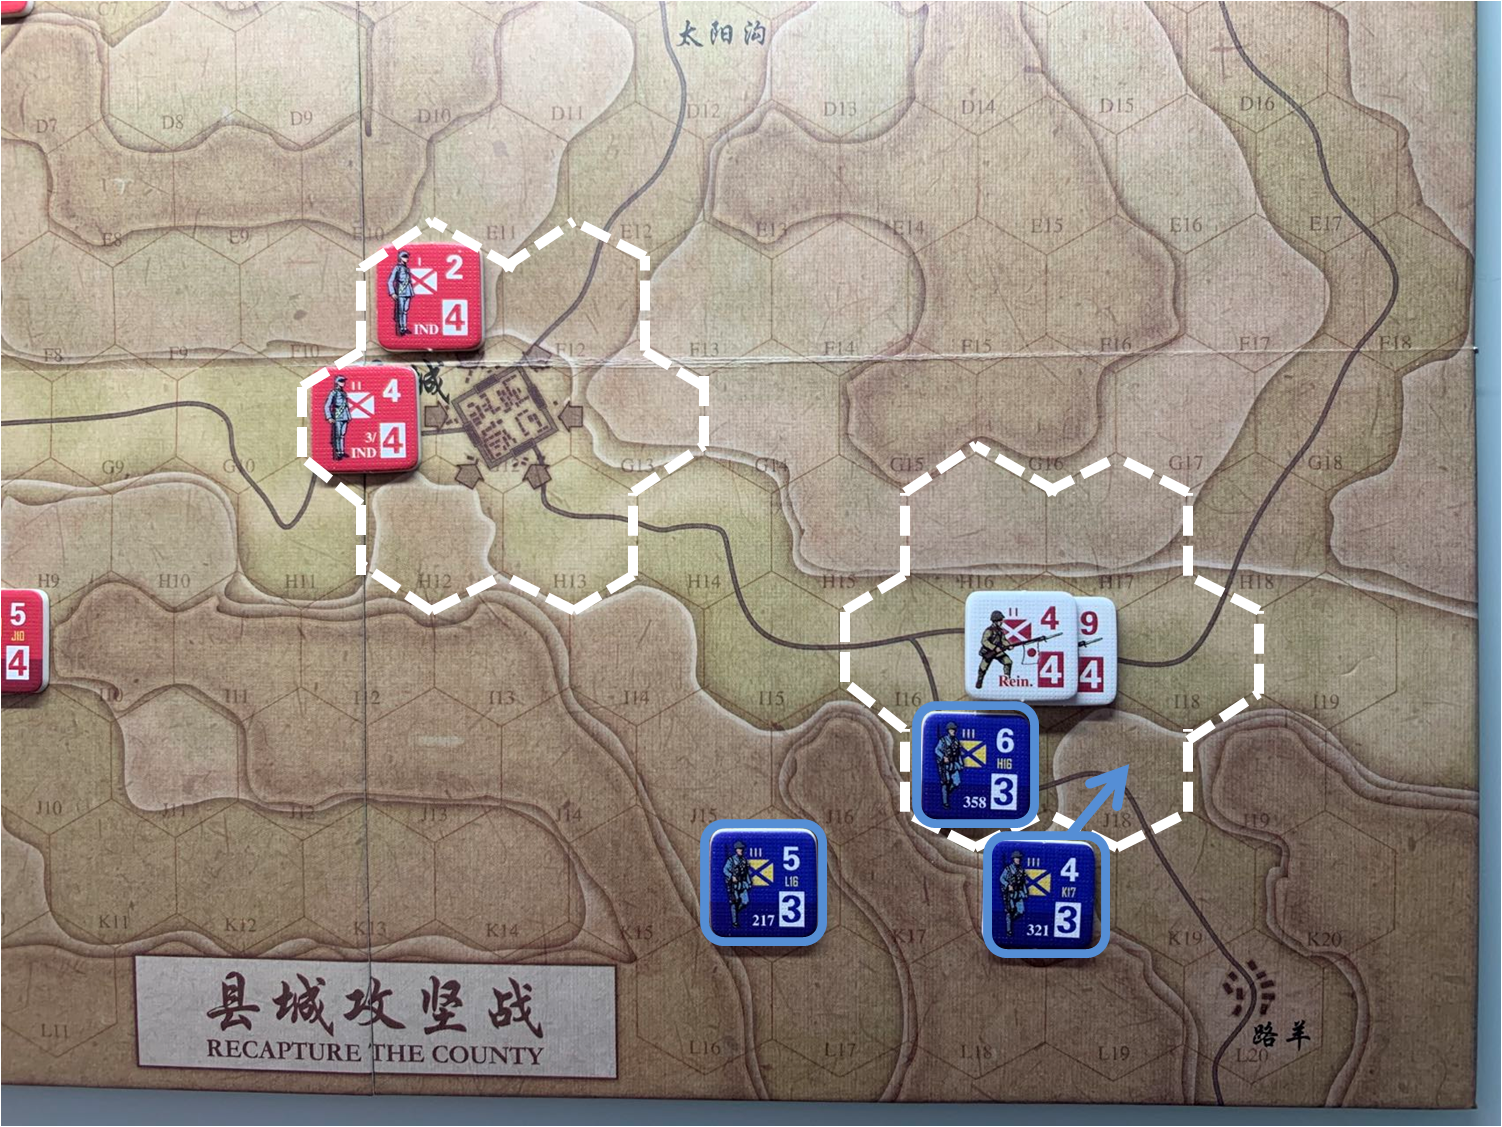 第三回合国军正规军部队对于移动命令4的执行计划，及县城周边和路羊方向日军增援部队（I17）日方控制区覆盖范围